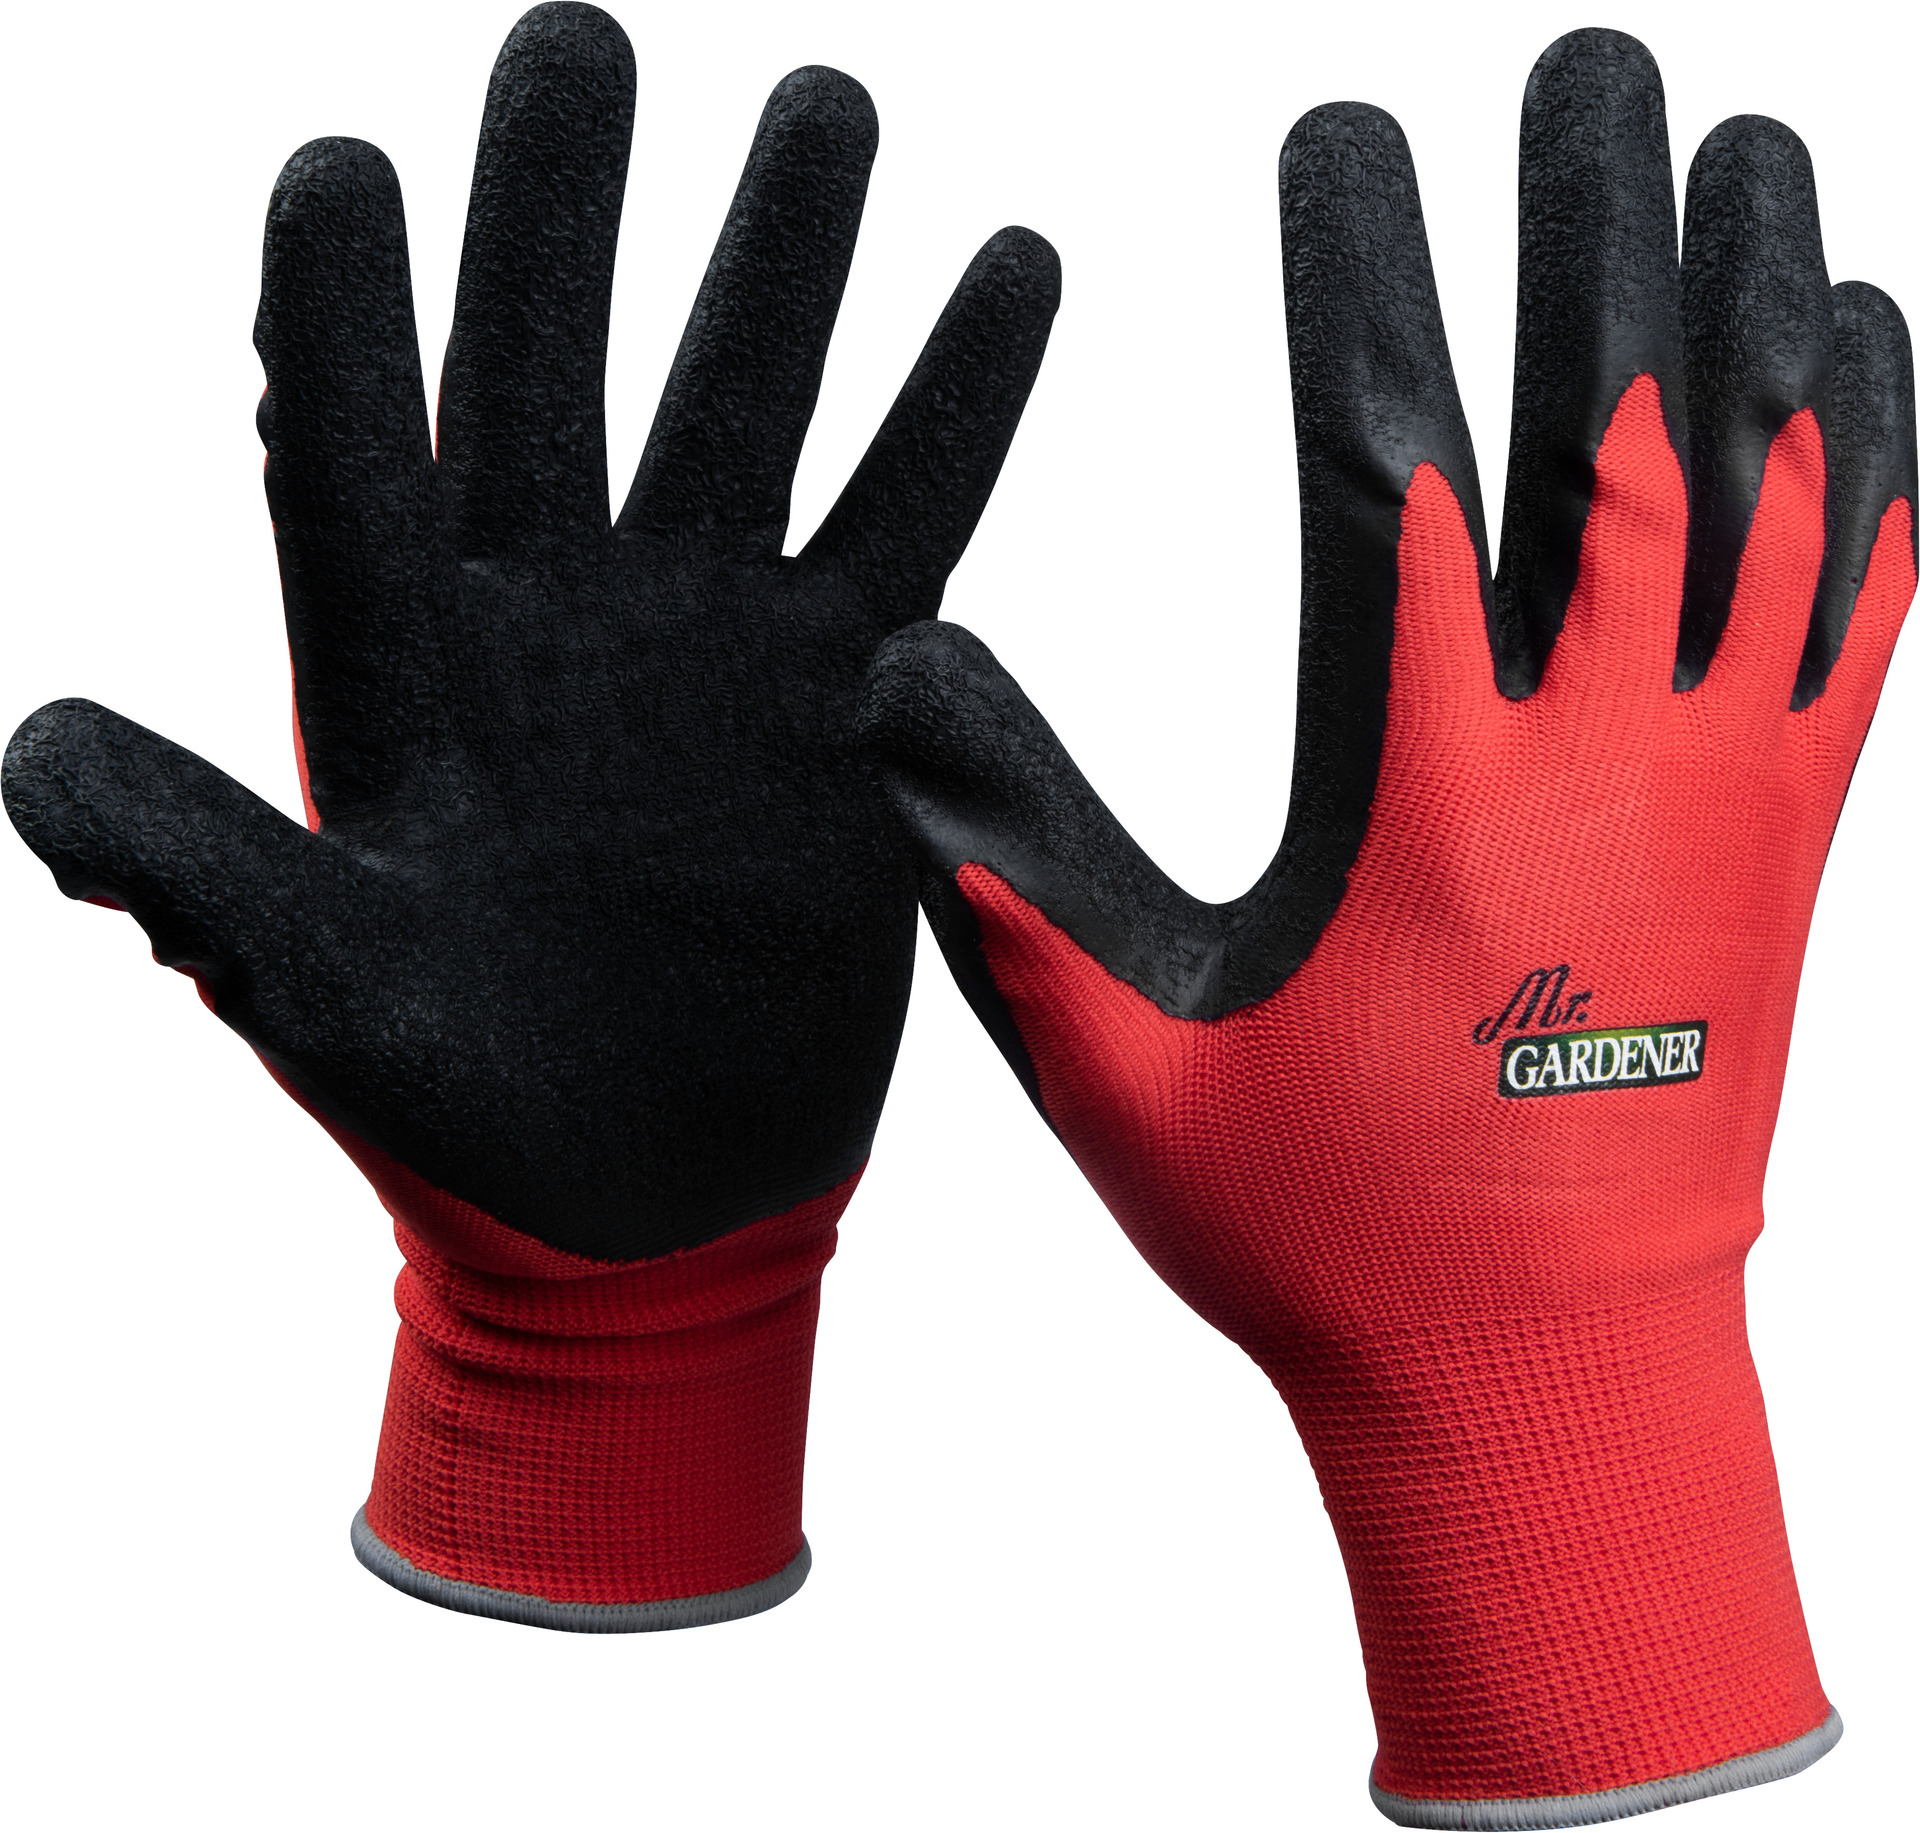 Conmetall Handschuhe Latex Gr. 9 3 Paar